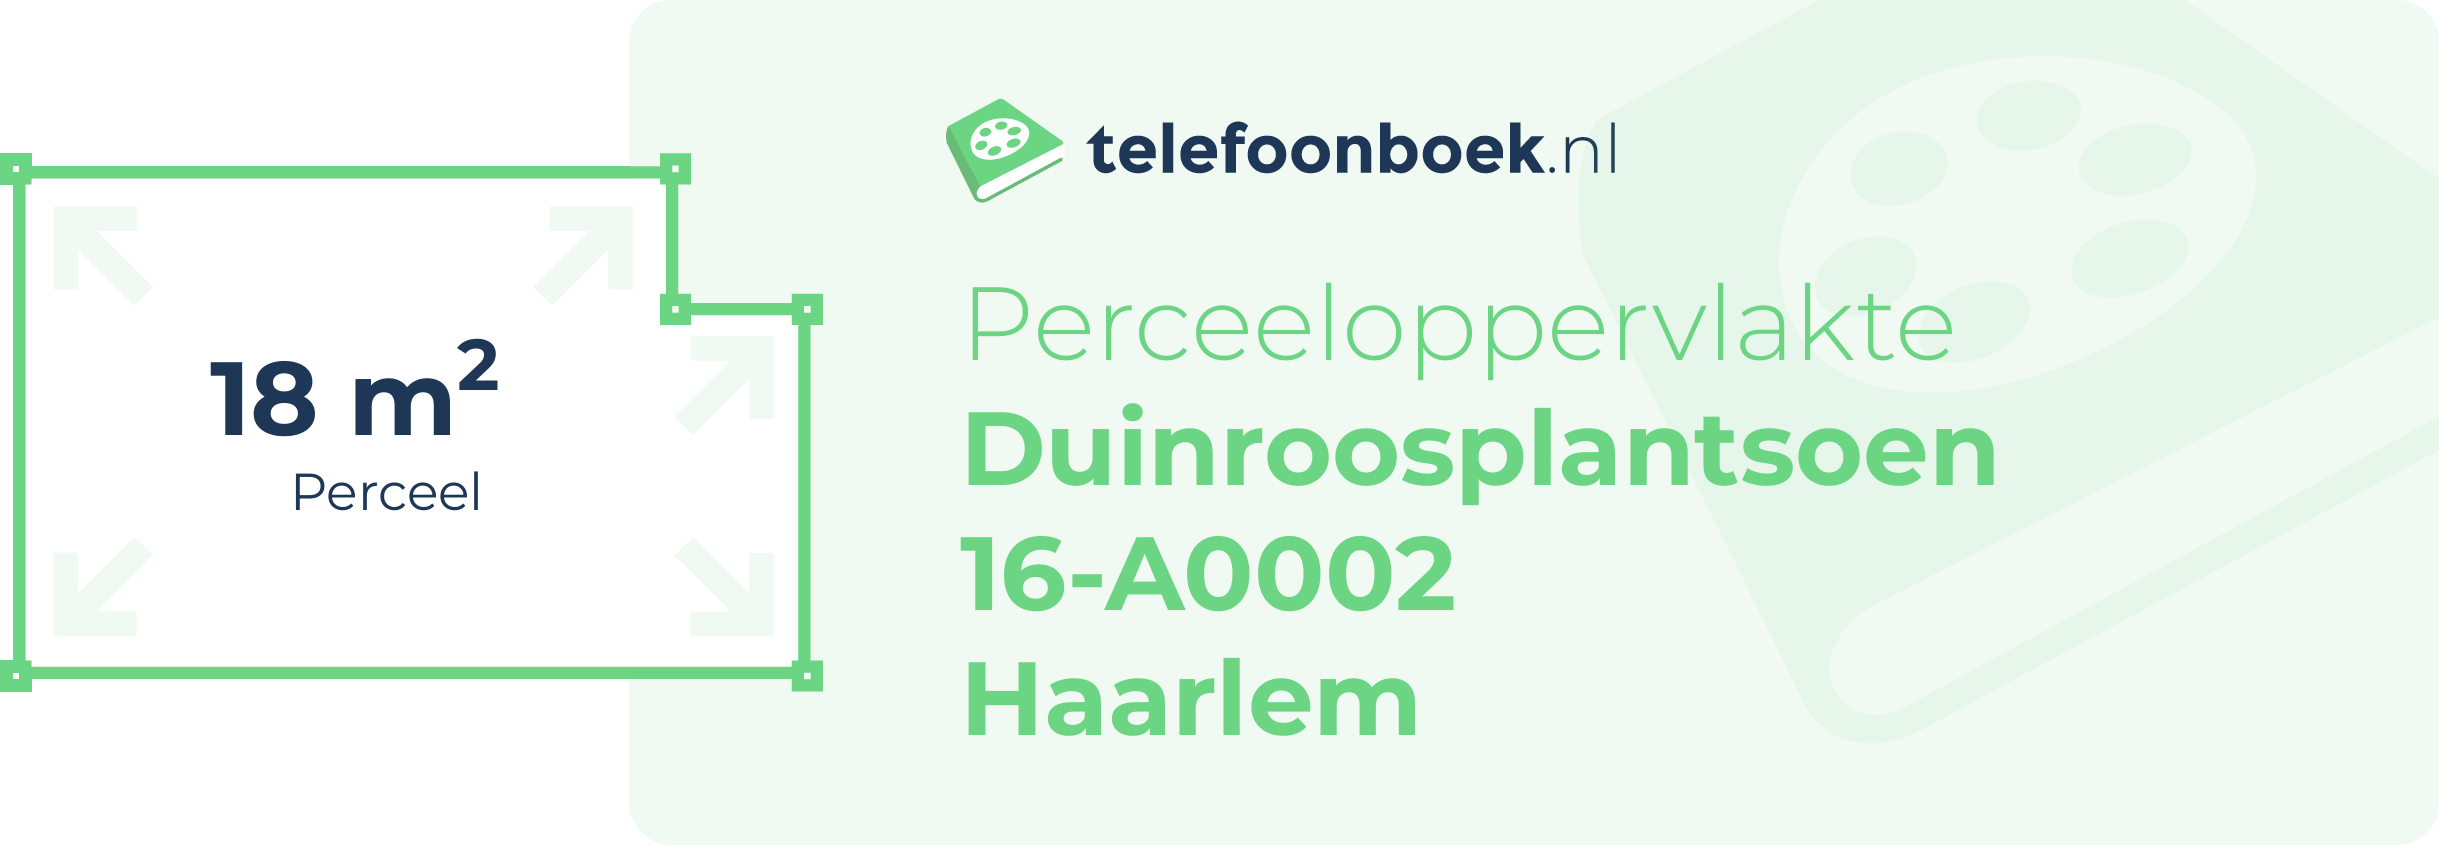 Perceeloppervlakte Duinroosplantsoen 16-A0002 Haarlem